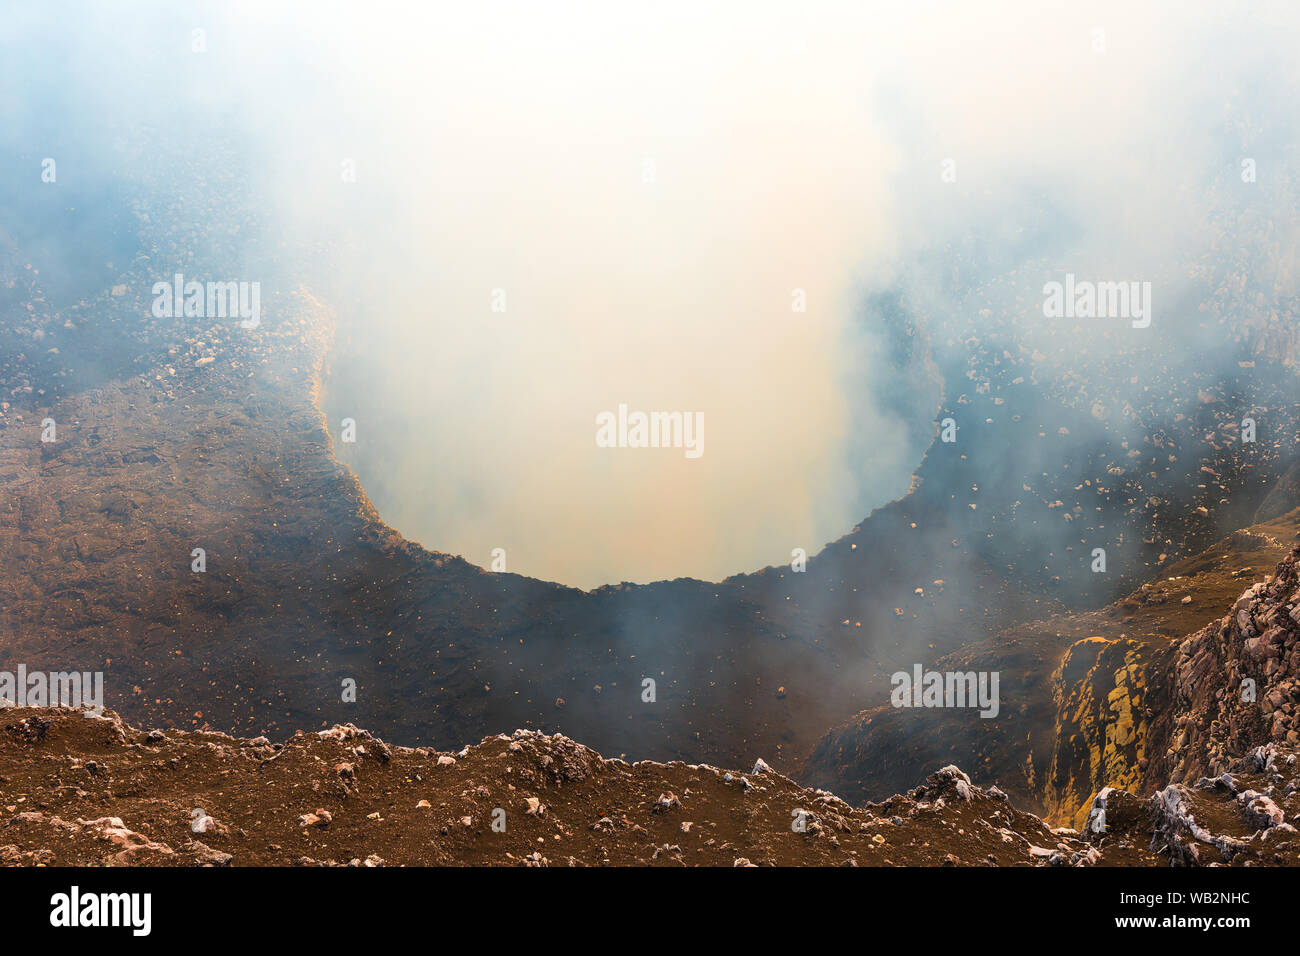 Le cratère volcanique actif du volcan Masaya avec ses gaz à effet de serre (dioxyde de soufre) au coucher du soleil situé entre Managua et Grenade, au Nicaragua. Banque D'Images